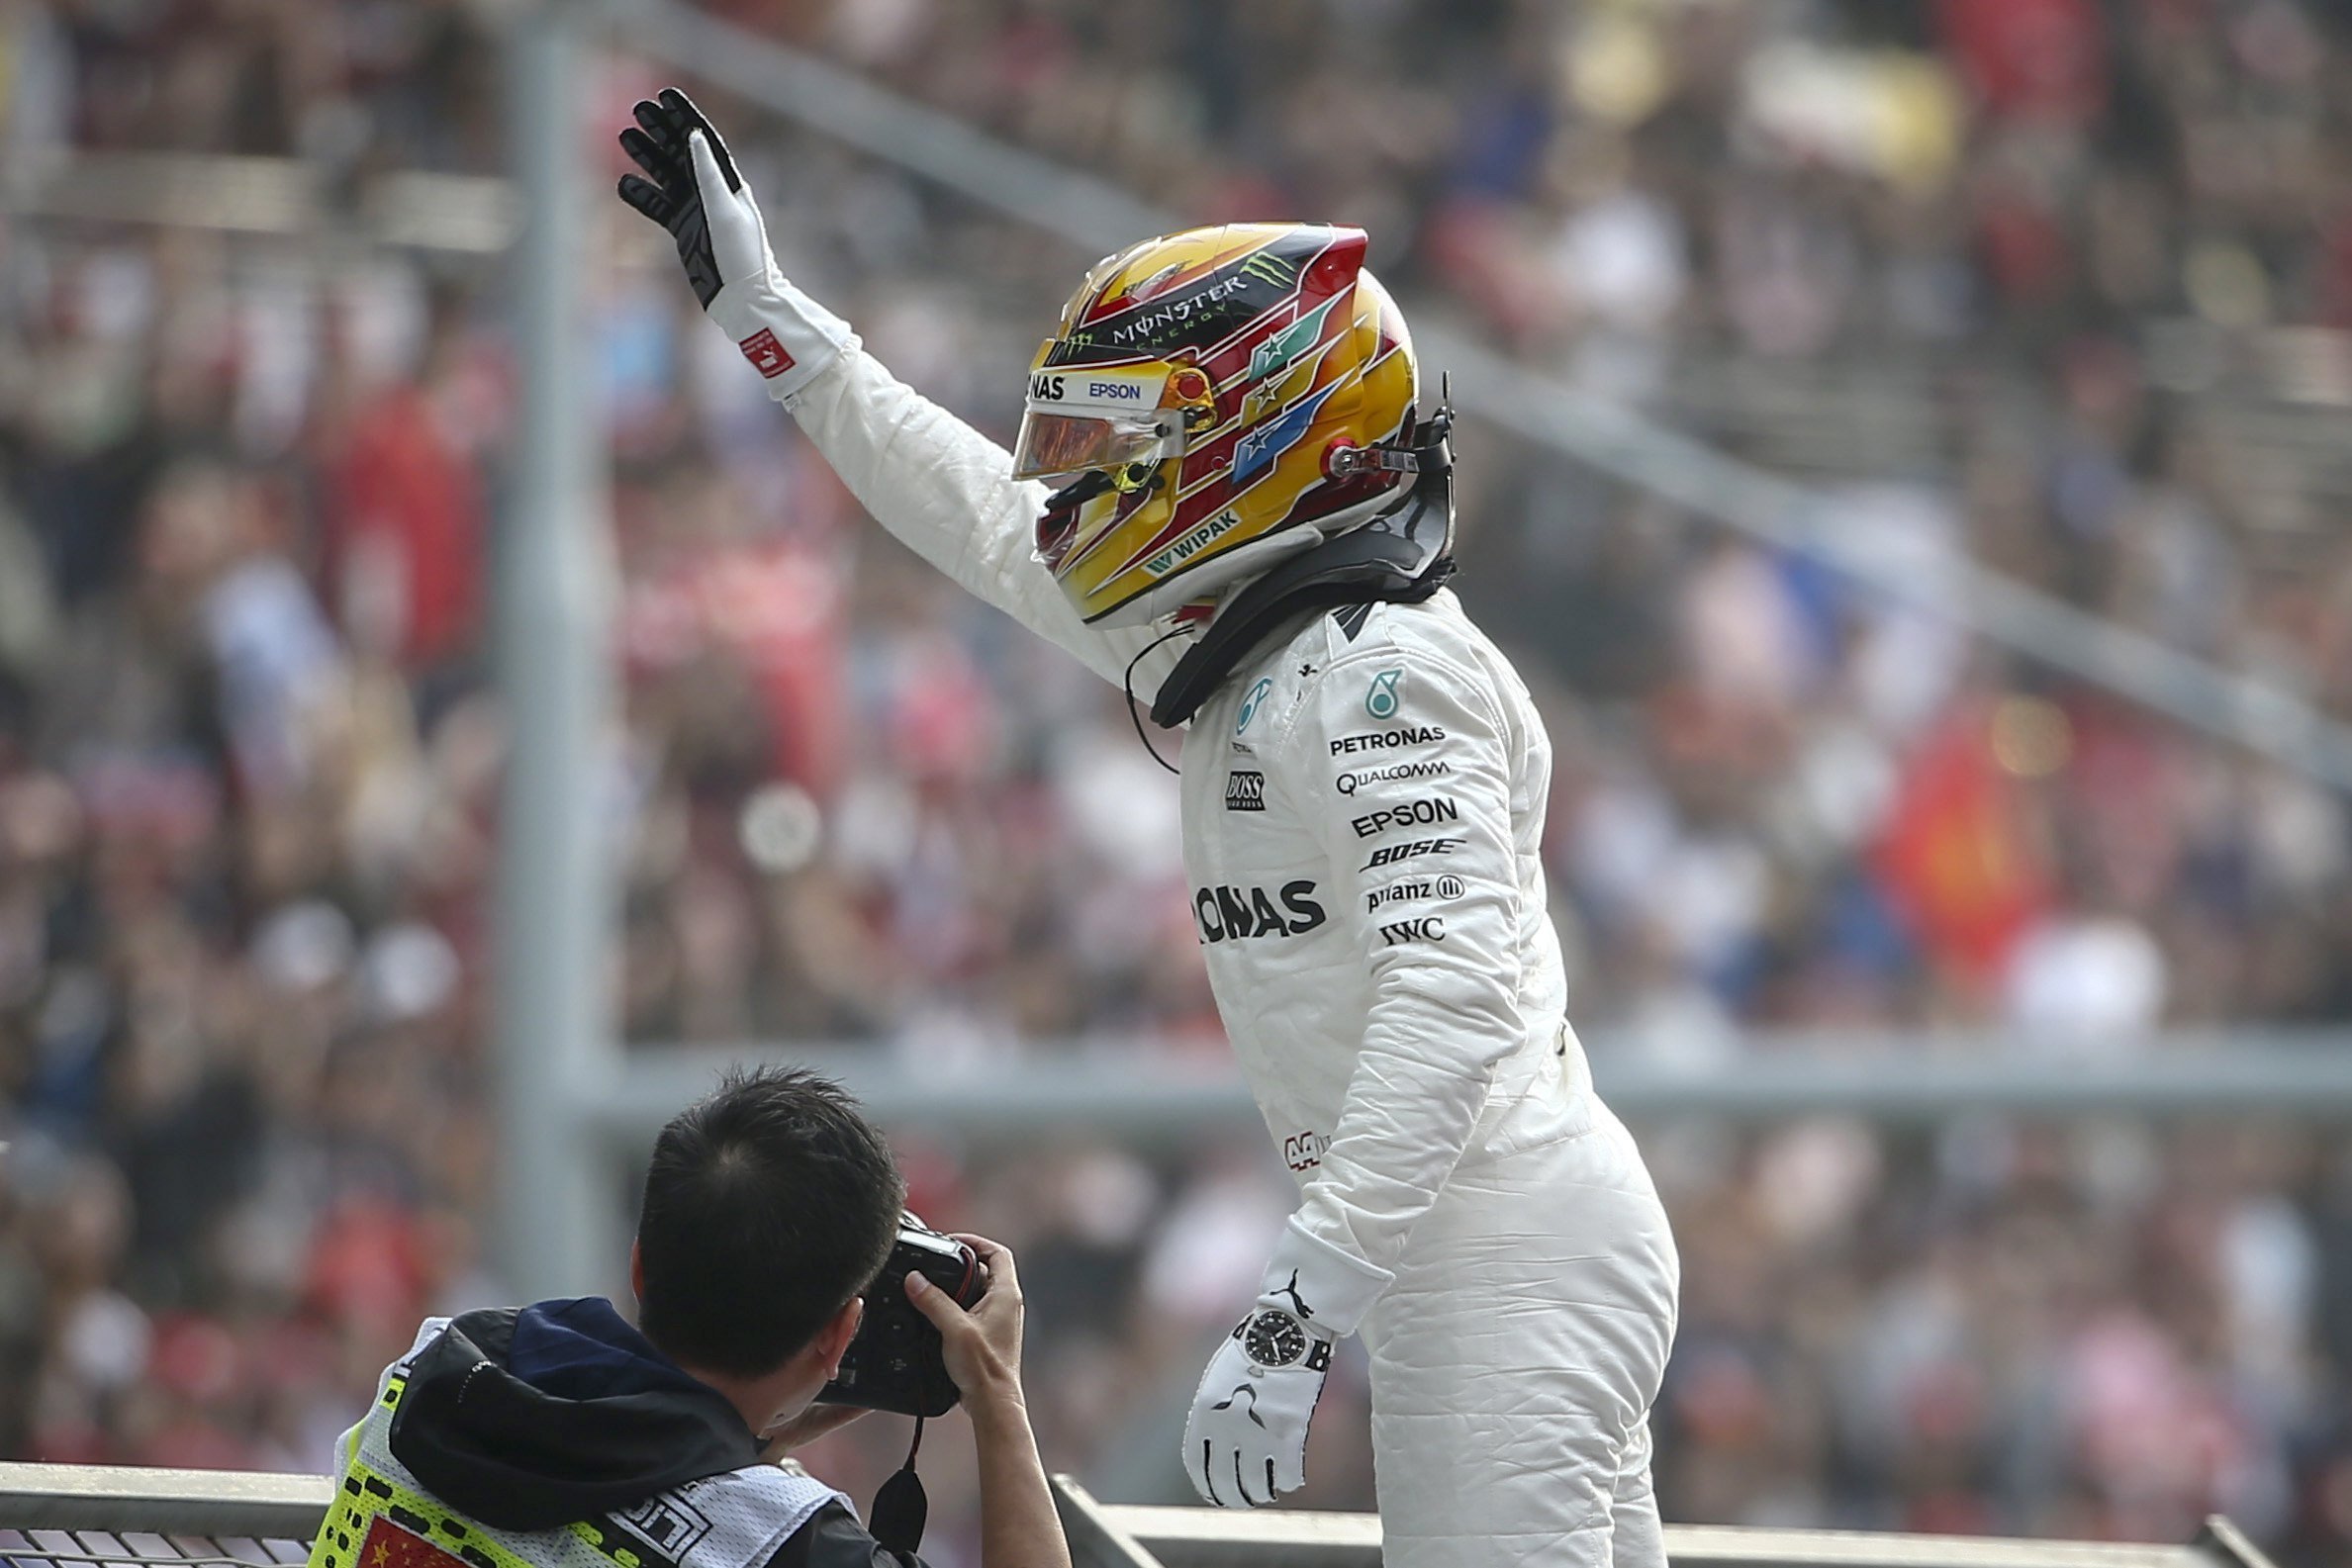 Hamilton repeteix pole a la Xina sense cedir a Vettel